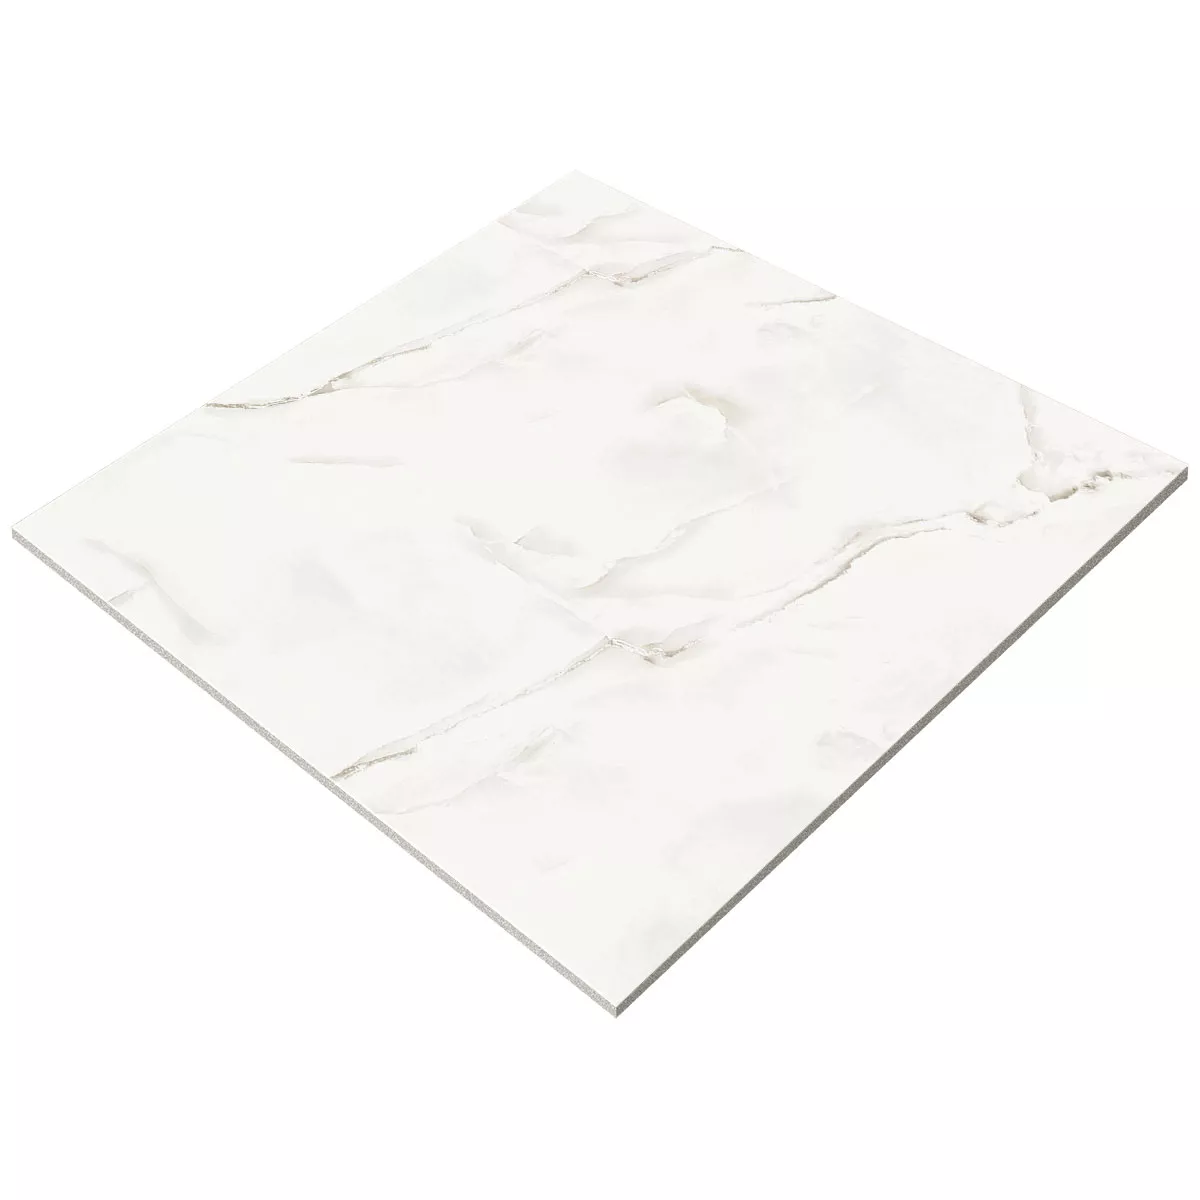 Carrelage Sol Et Mur Konza Marbre Optique Poli Brillant Brillant Blanc 120x120cm